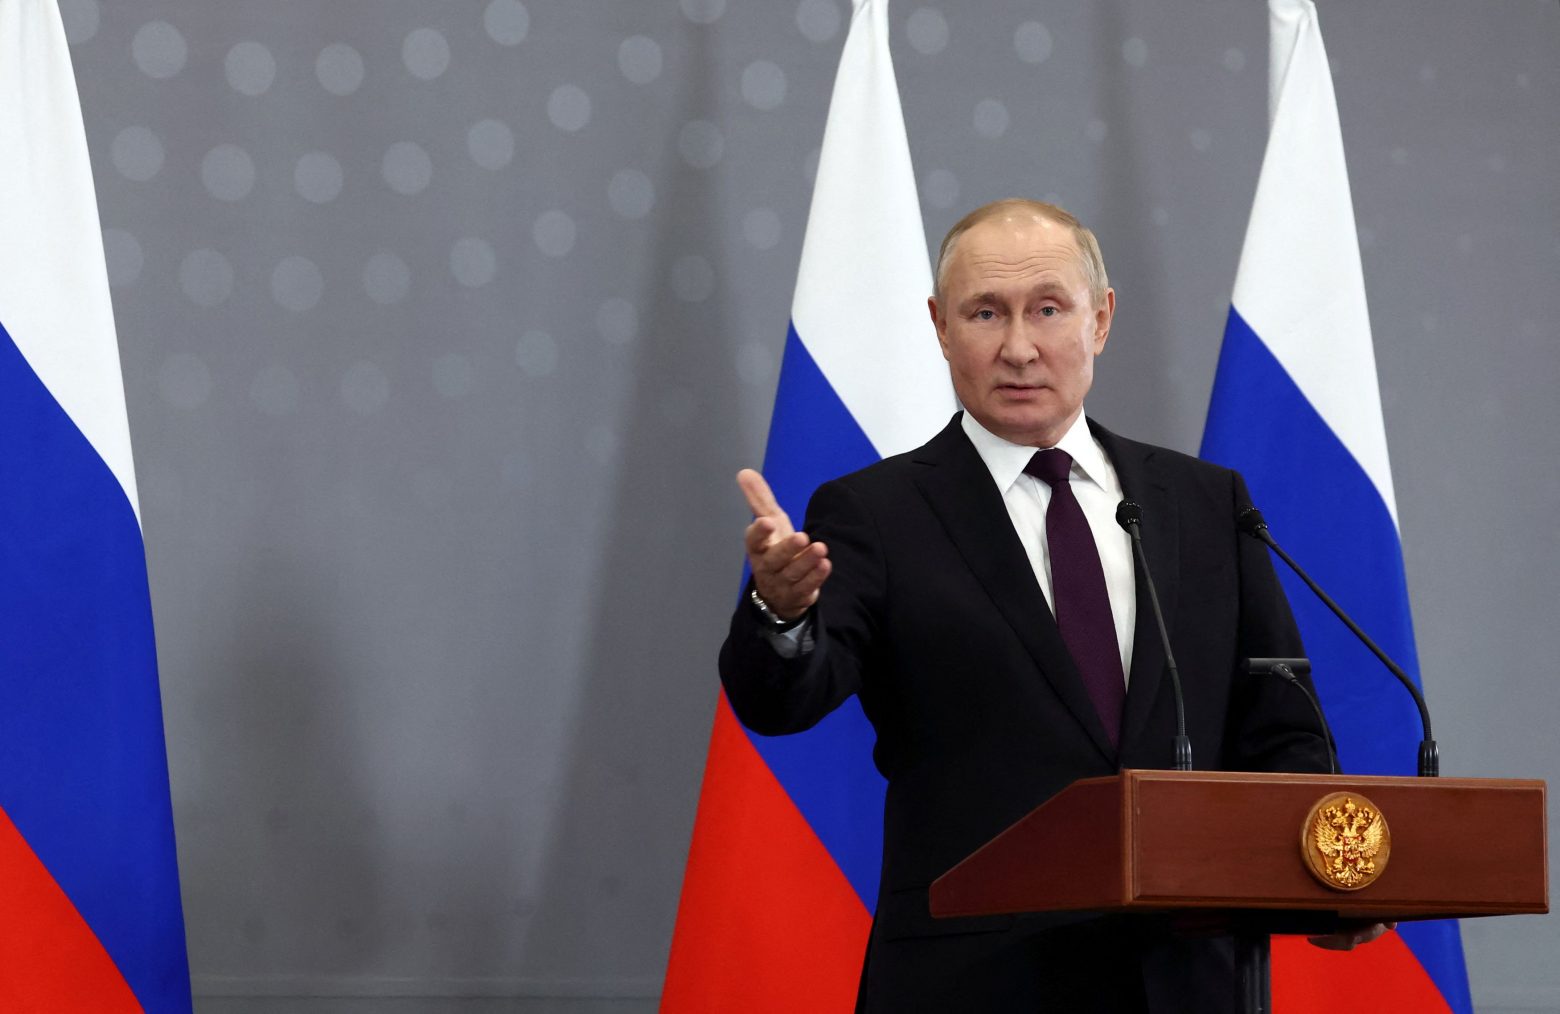 Ο Β.Πούτιν συνεχάρη τον Μ.Νετανιάχου – Ζήτησε ενίσχυση της συνεργασίας Ρωσίας-Ισραήλ